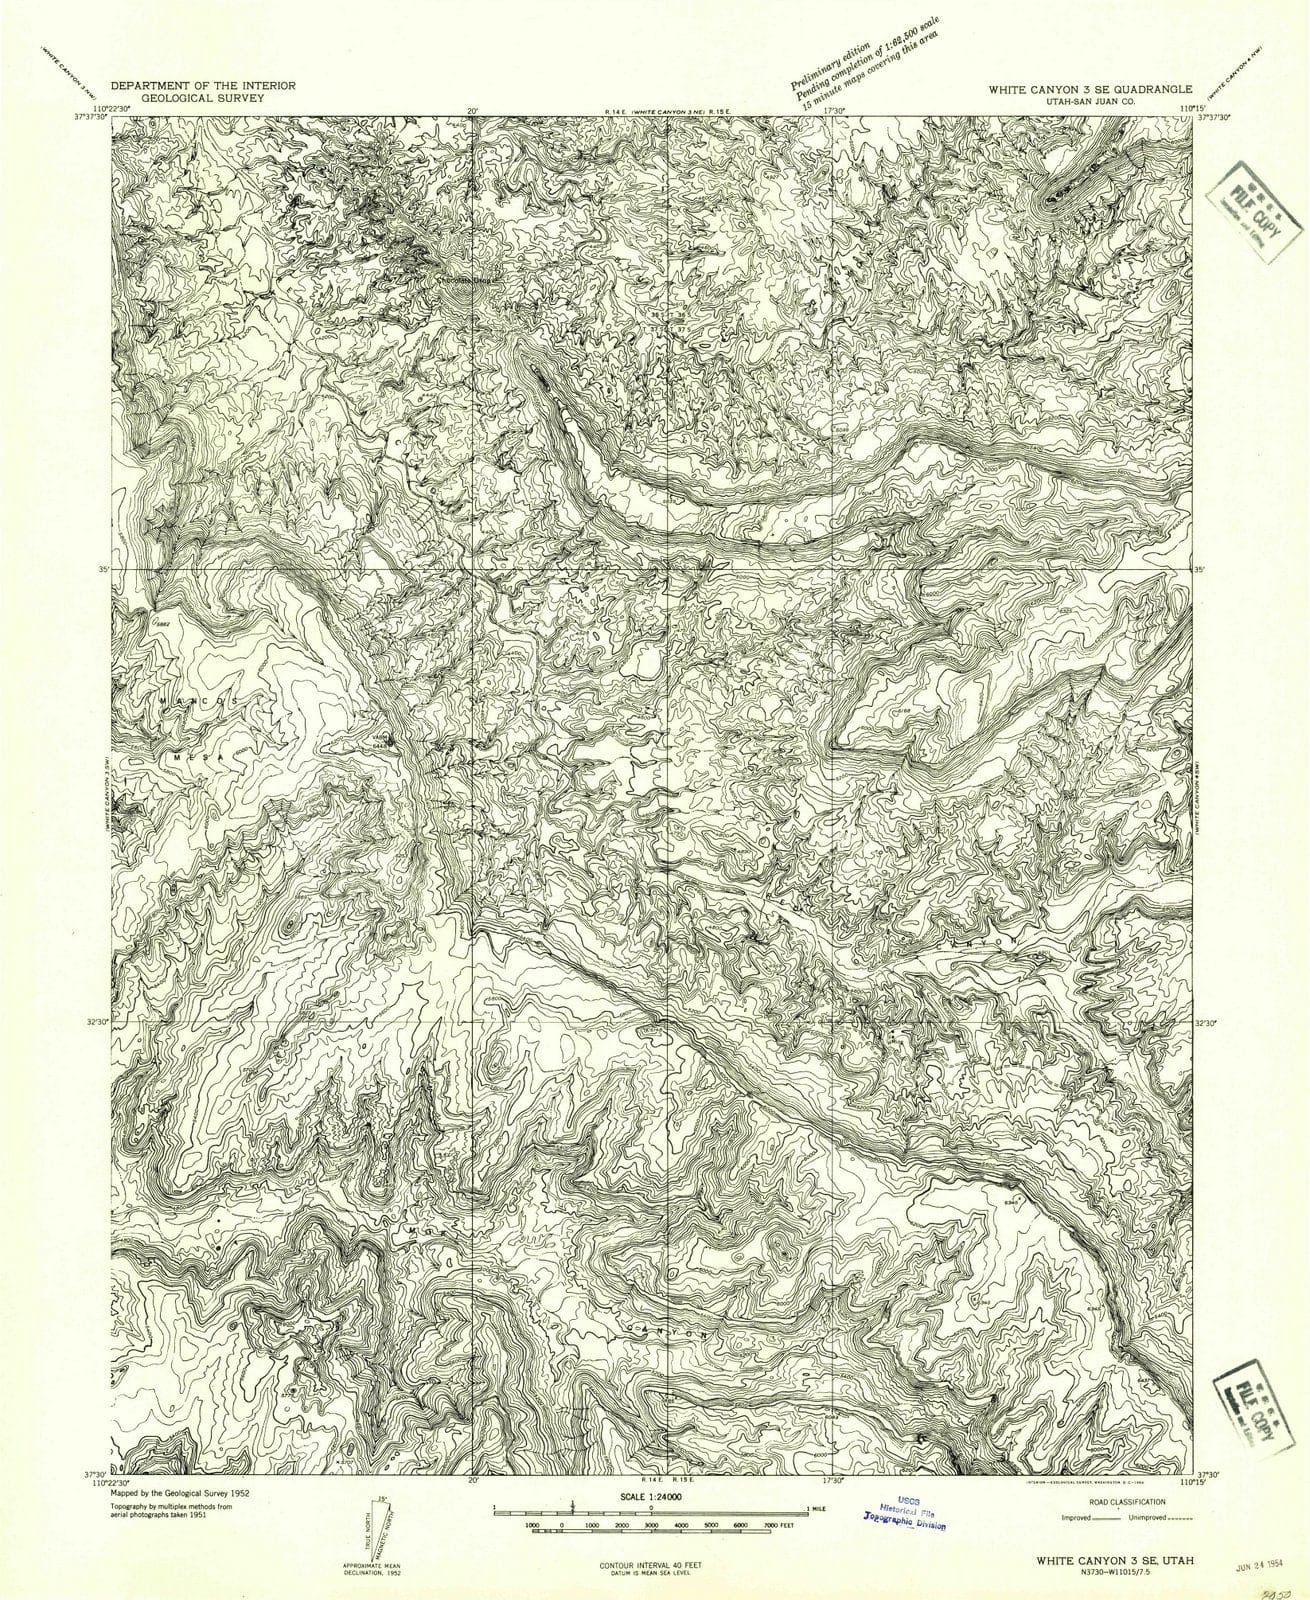 1954 White Canyon 3, UT - Utah - USGS Topographic Map v3